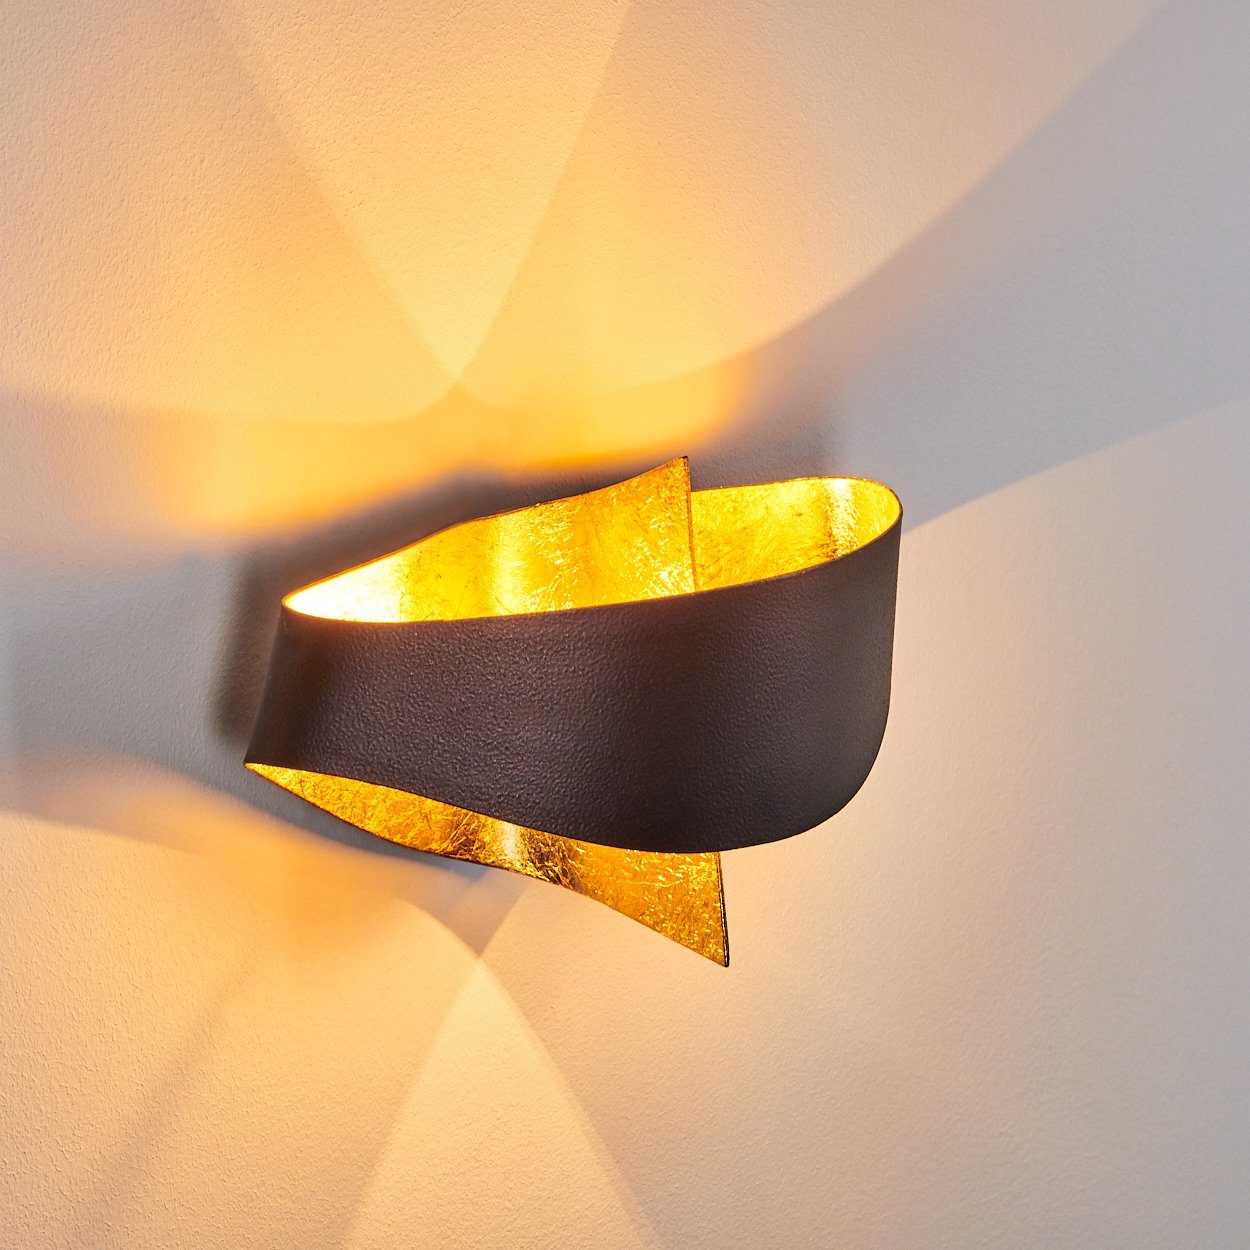 mit Down-Effekt, Braun/Gold, ohne Lichteffekt & mit Wandlampe in hofstein aus moderne Metall Zimmerlampe Wandleuchte »Aschi« 2xG9, Up Leuchtmittel,